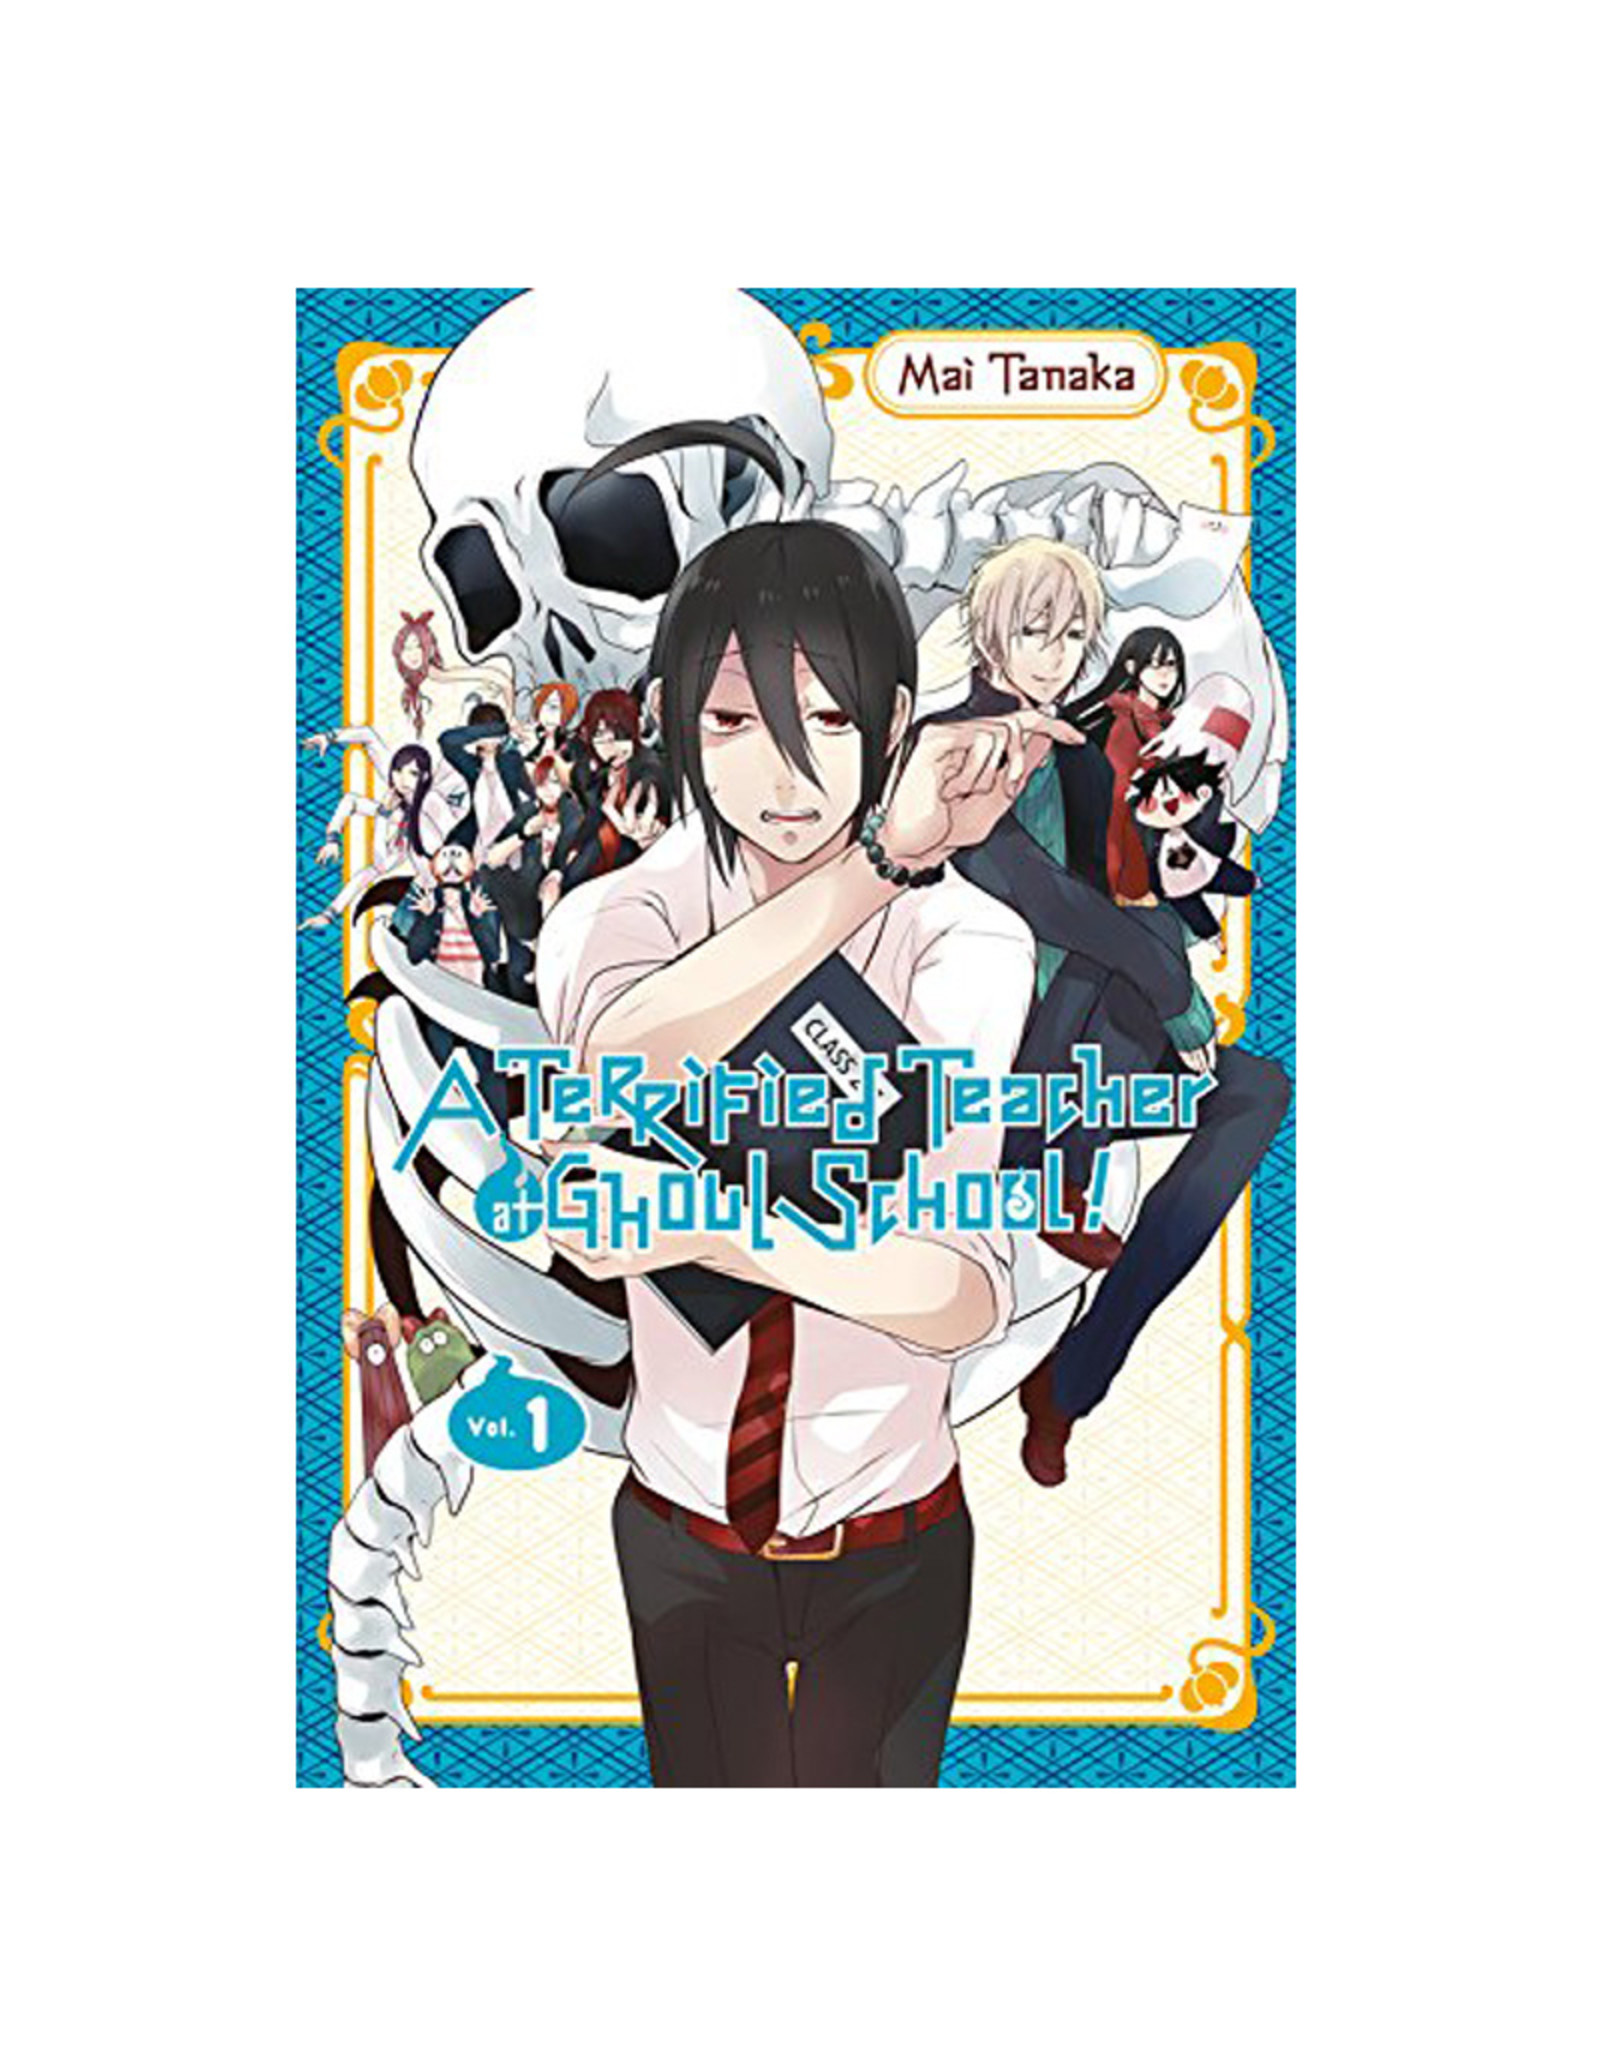 Yen Press A Terrified Teacher at Ghoul School Volume 01